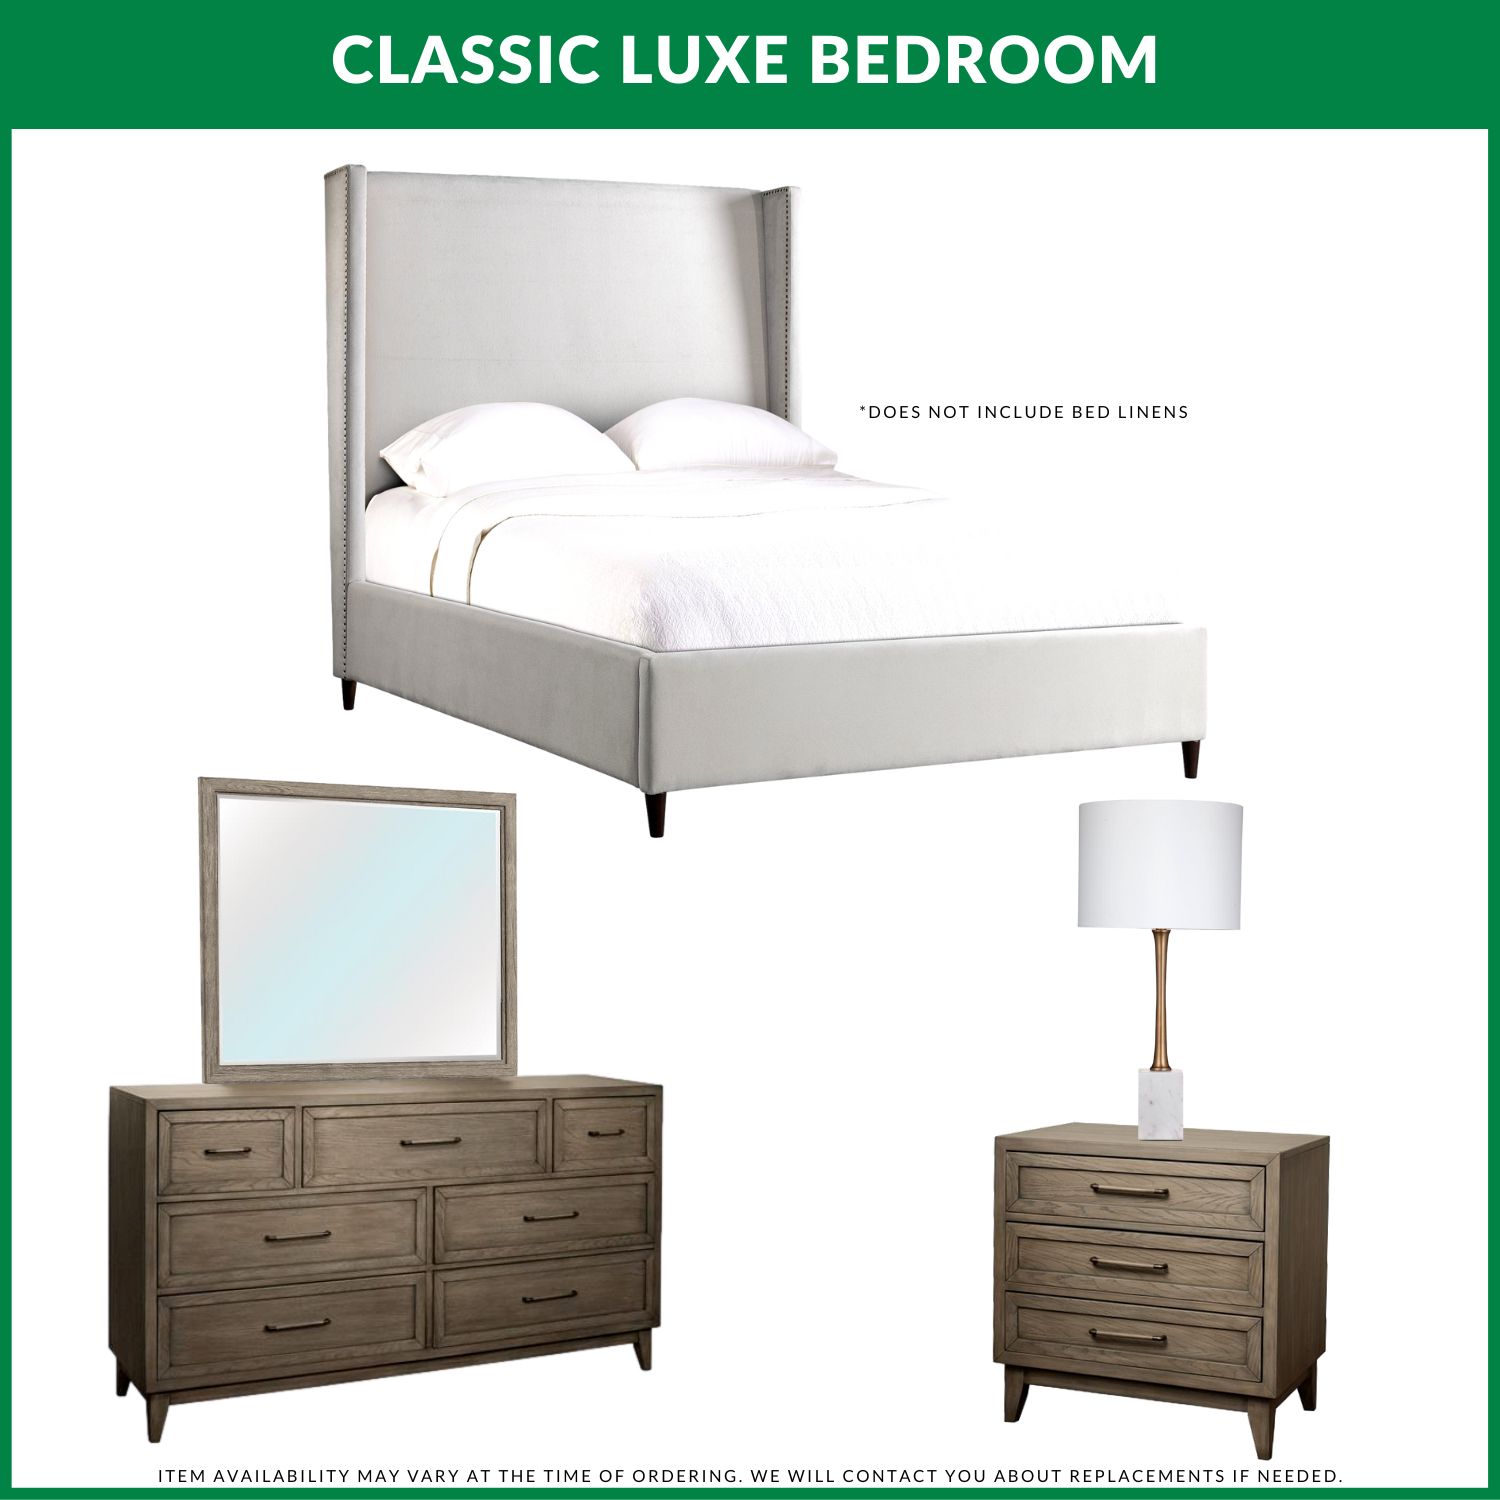 Classic Luxe Bedroom